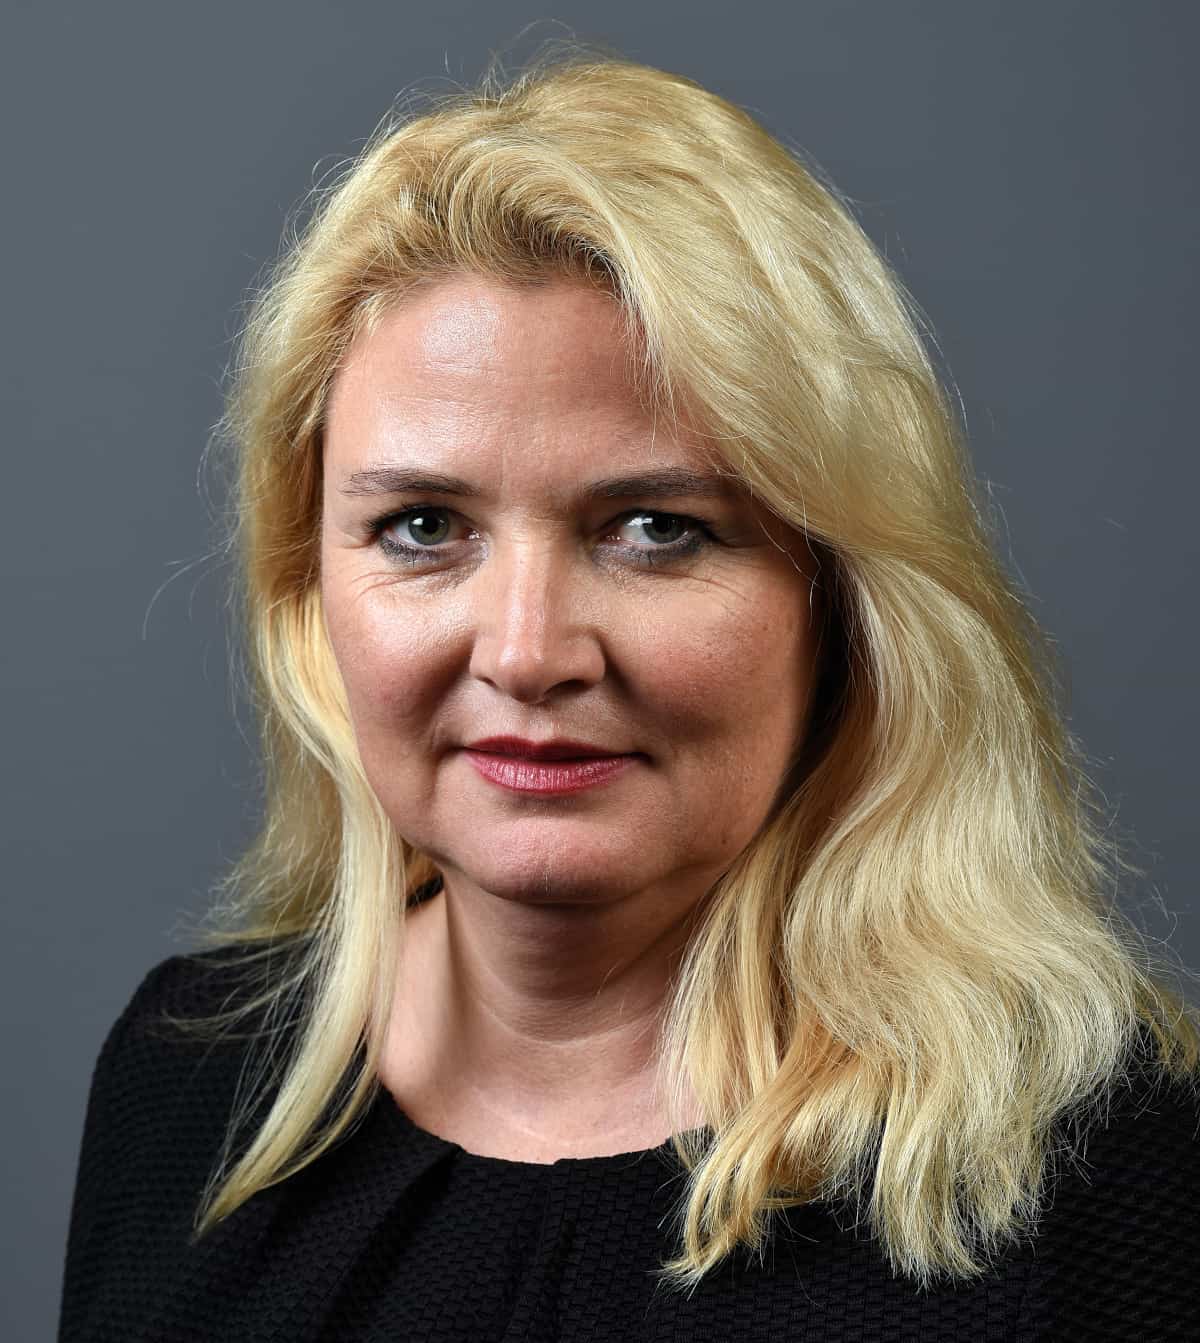 Spitzenkandidaten bei der Wahl in Berlin 2021 - Kristin Brinker, Kandidatin der AfD